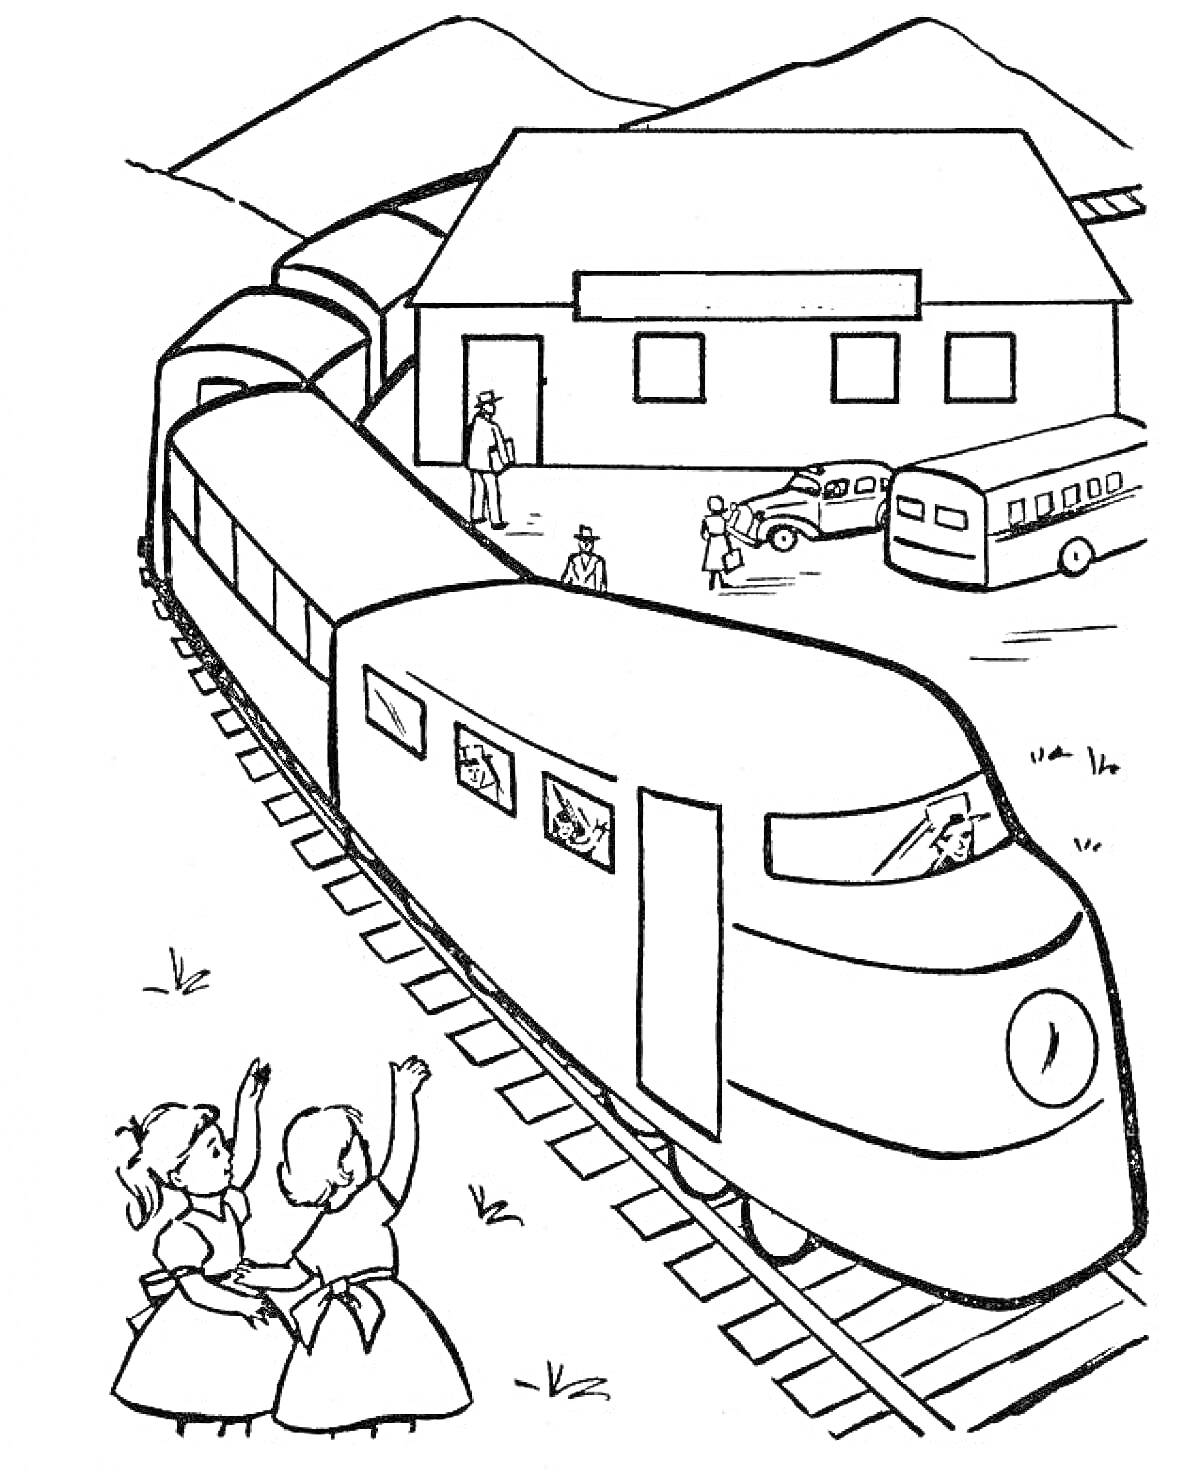 Поезд у маленькой станции, пассажиры в окнах, люди и машины на станции, две девочки машут поезду